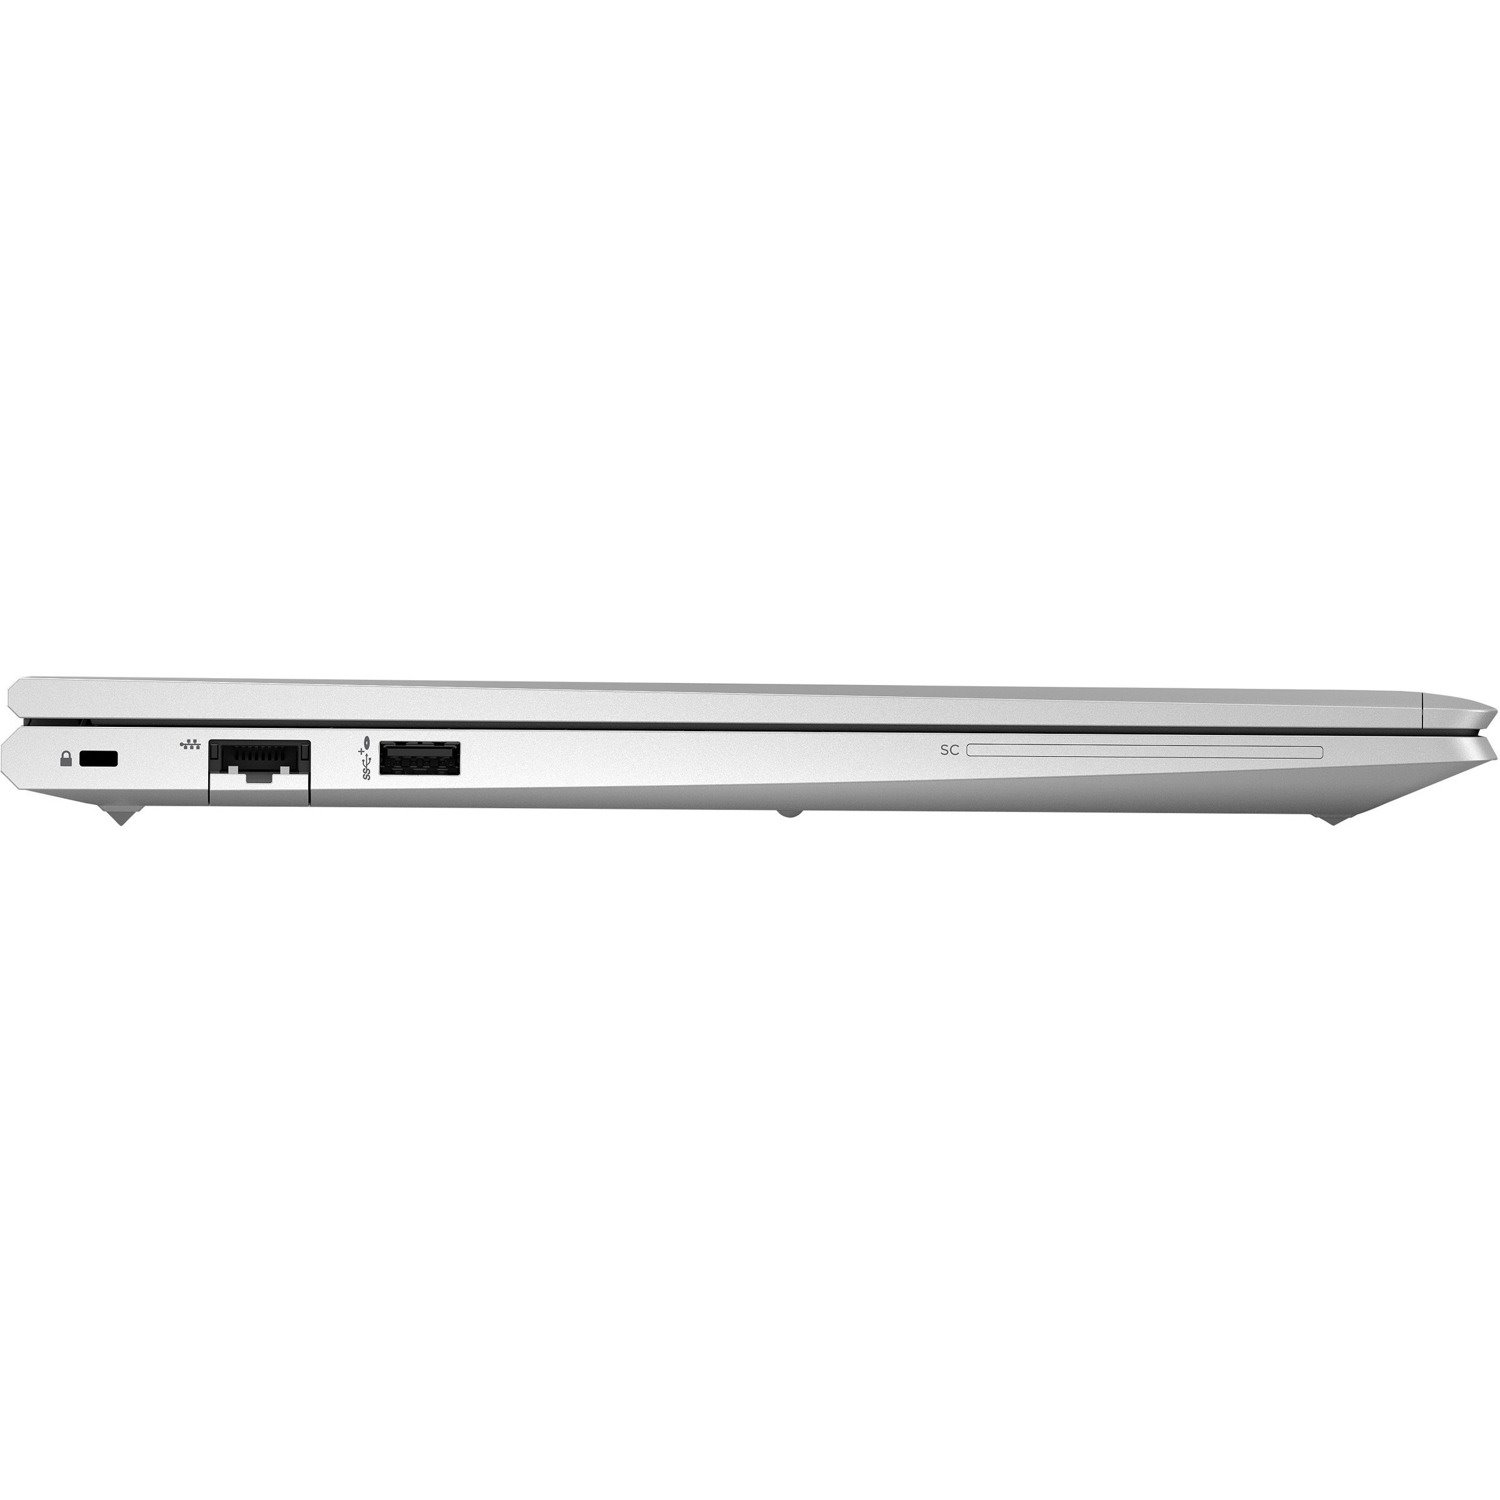 HP ProBook 650 G8 15.6" Notebook - Full HD - Intel Core i5 11th Gen i5-1145G7 - 8 GB - 512 GB SSD